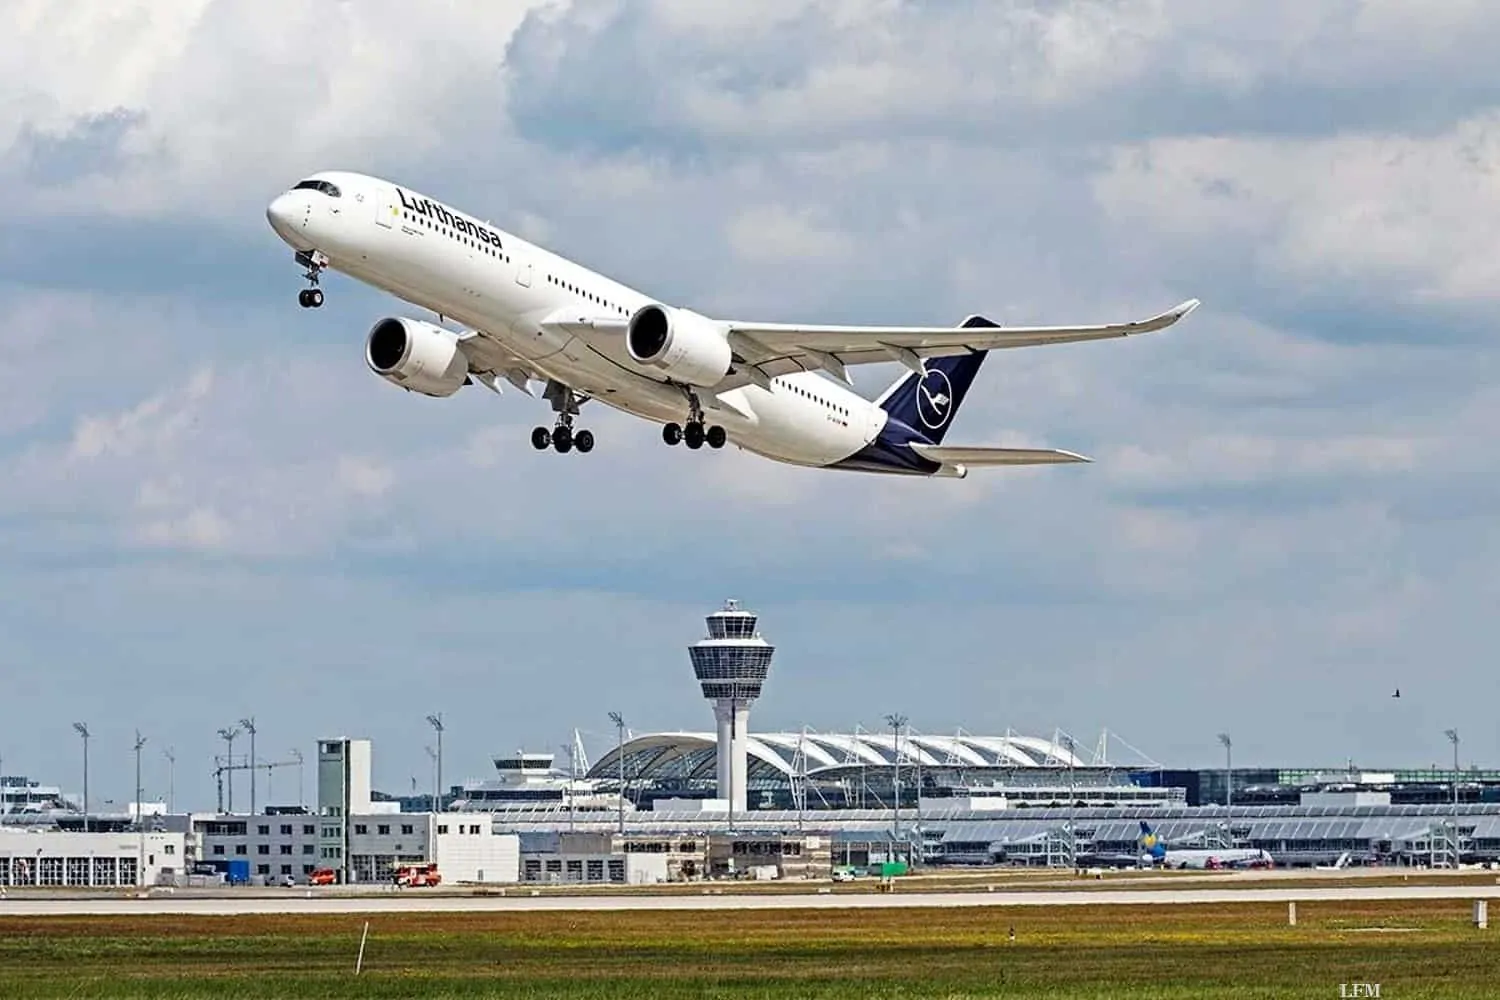 Flughafen München verzeichnet erneuten Passagieranstieg